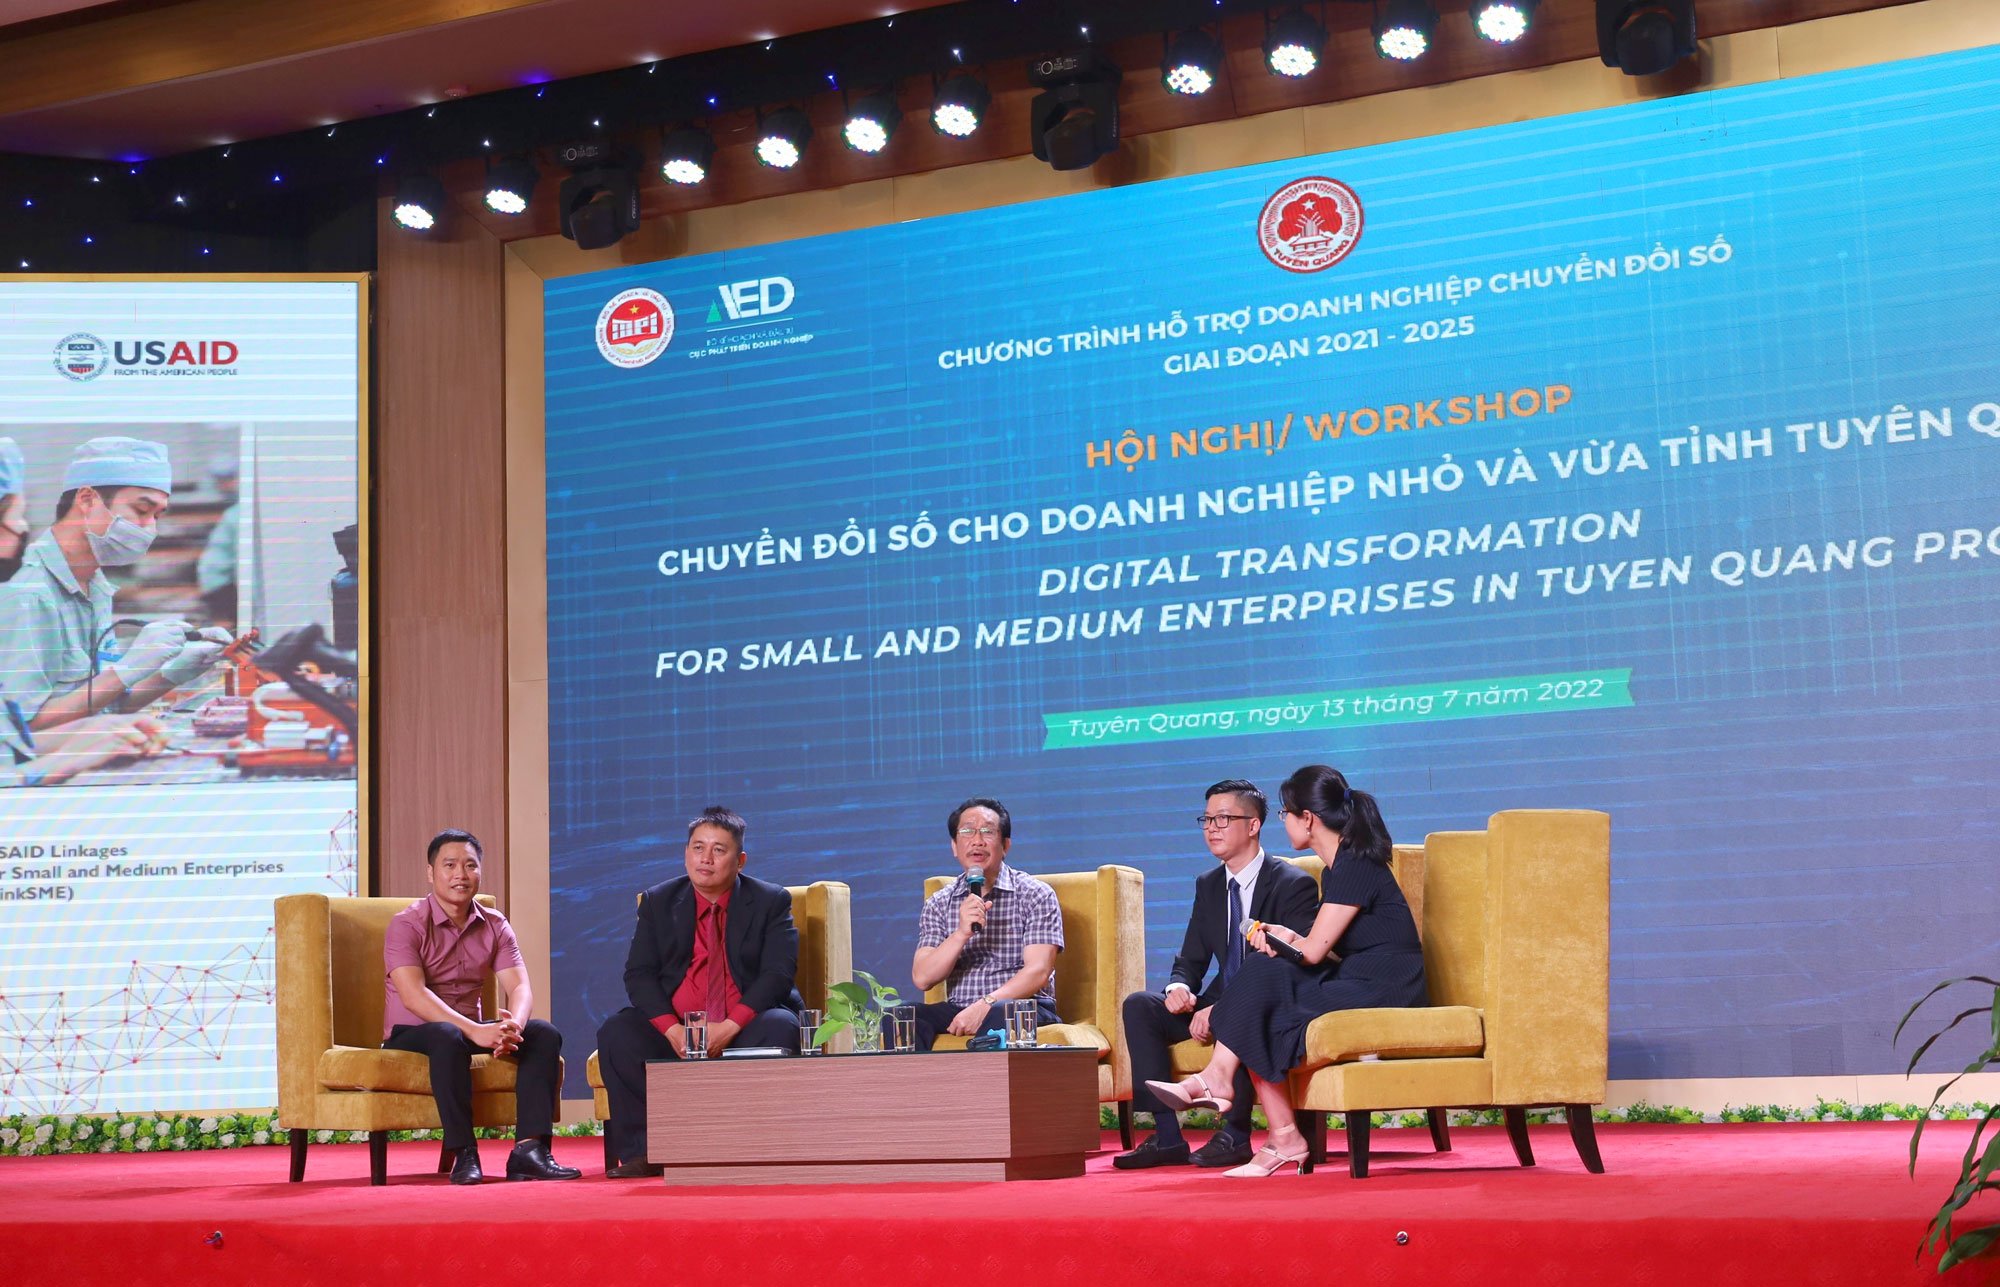 Ông Nguyễn Đoàn Kết – Phó Tổng giám đốc Công ty chia sẻ chiến lược chuyển đổi số Rạng Đông trong Chương trình Chuyển đổi số doanh nghiệp trong khuôn khổ hợp tác của Cơ quan phát triển quốc tế Hoa kỳ USAID với Bộ Kế hoạch và Đầu tư Việt Nam